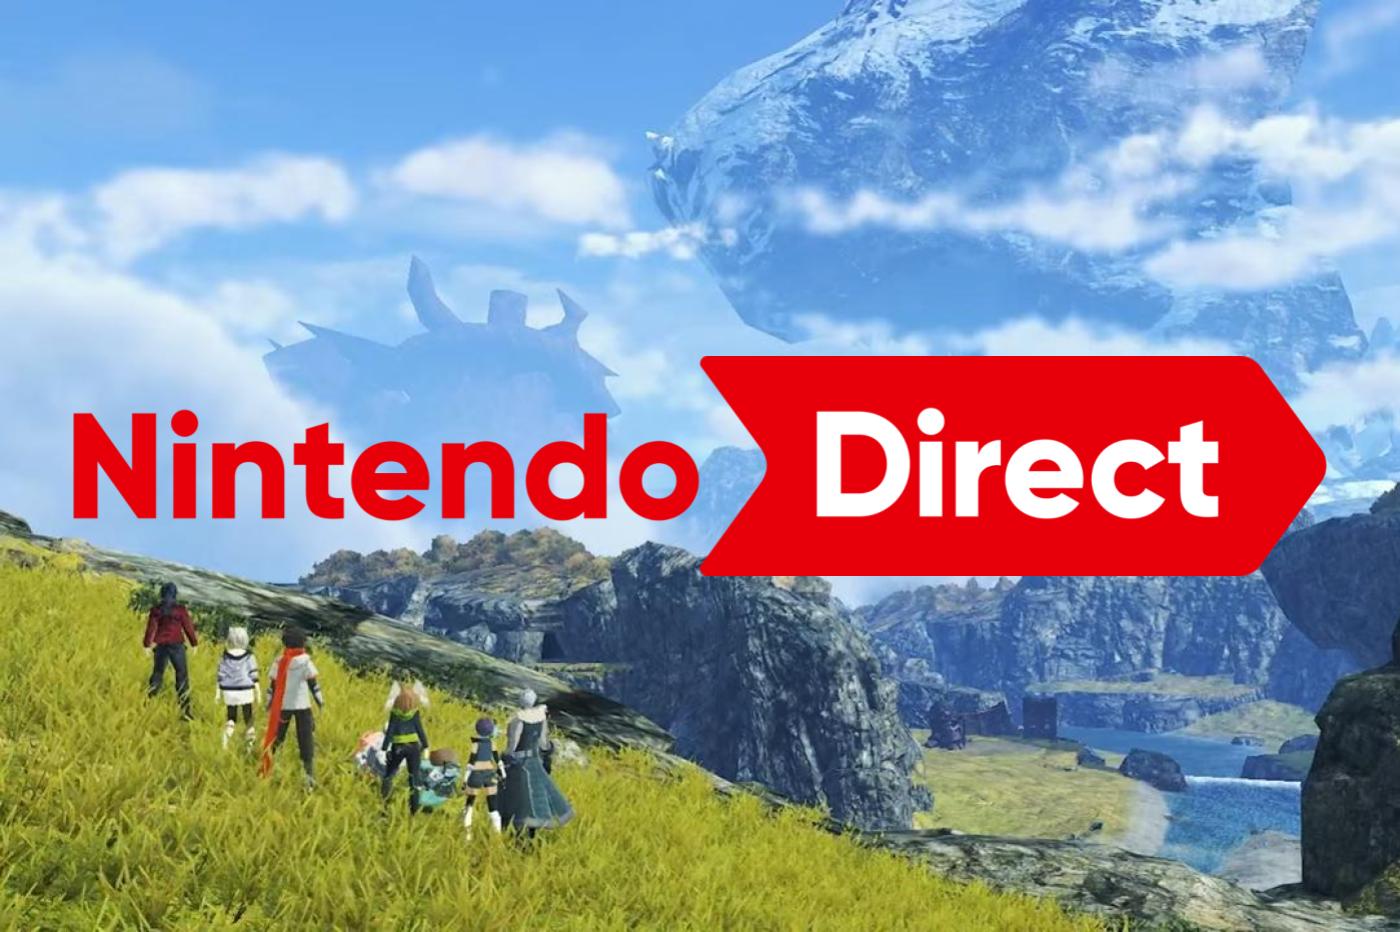 Capture d'écran de Xenoblade Chronicles 3 avec des plaines et les personnages principaux. Le logo Nintendo Direct est incrusté devant.